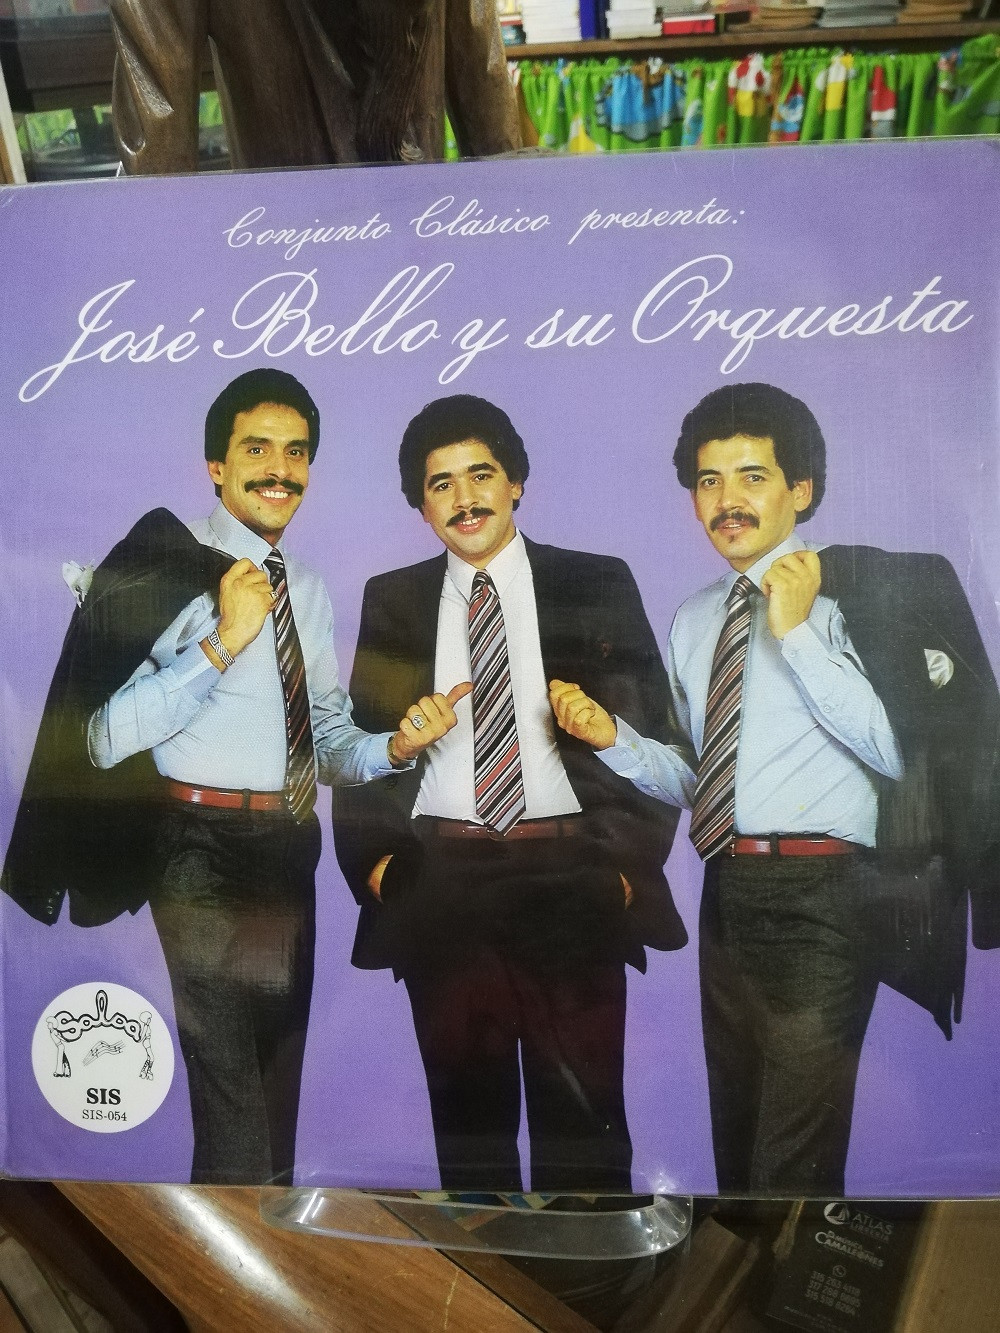 Imagen LP JOSÉ BELLO Y SU ORQUESTA - CONJUNTO CLÁSICO PRESENTA A JOSÉ BELLO Y SU ORQUESTA